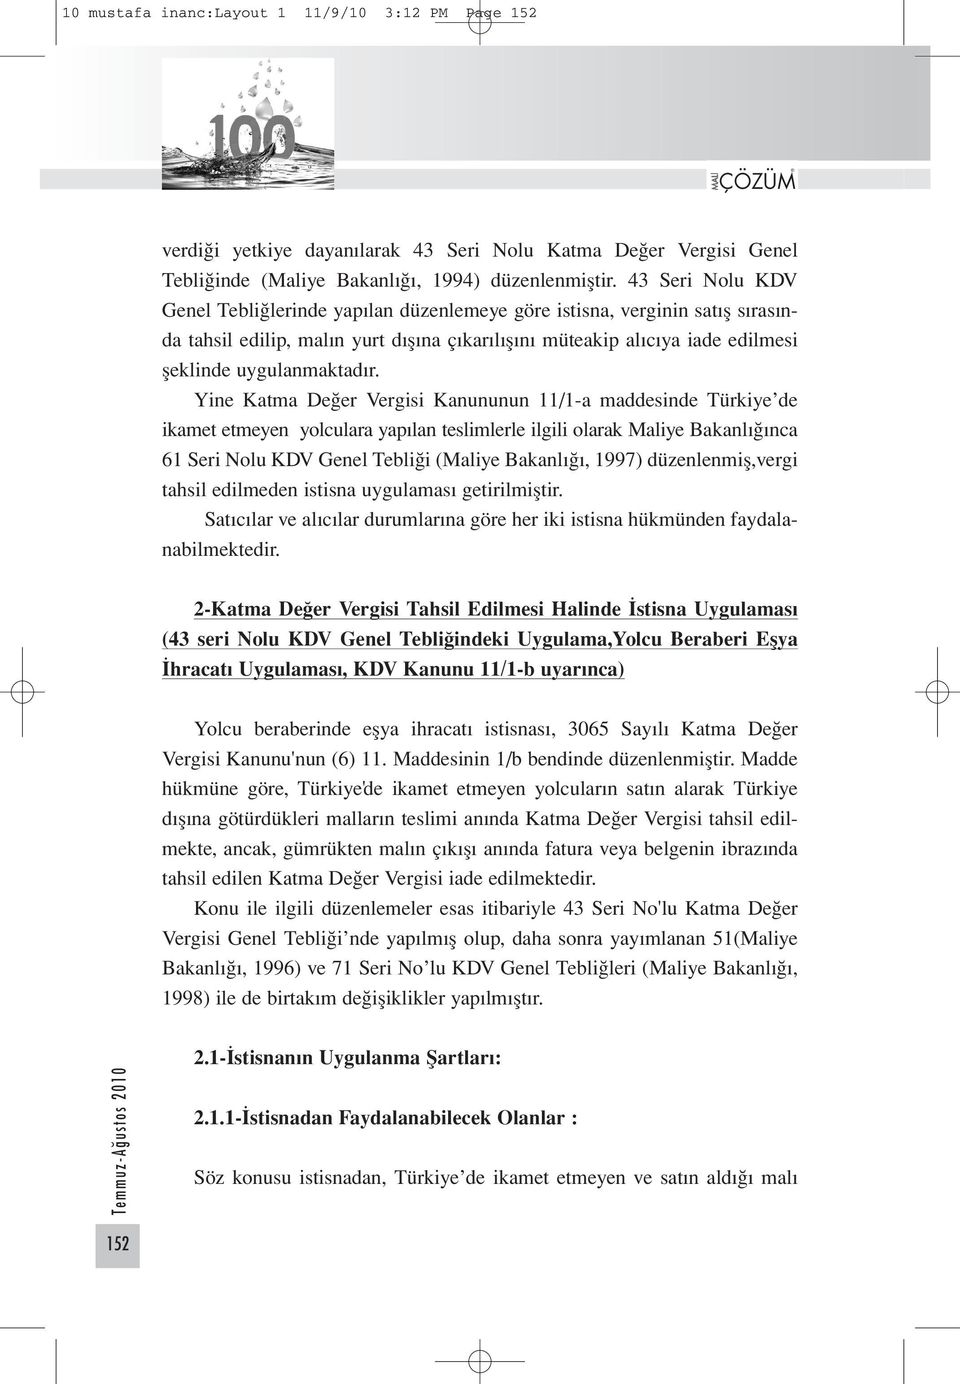 Yine Katma Değer Vergisi Kanununun 11/1-a maddesinde Türkiye de ikamet etmeyen yolculara yapılan teslimlerle ilgili olarak Maliye Bakanlığınca 61 Seri Nolu KDV Genel Tebliği (Maliye Bakanlığı, 1997)